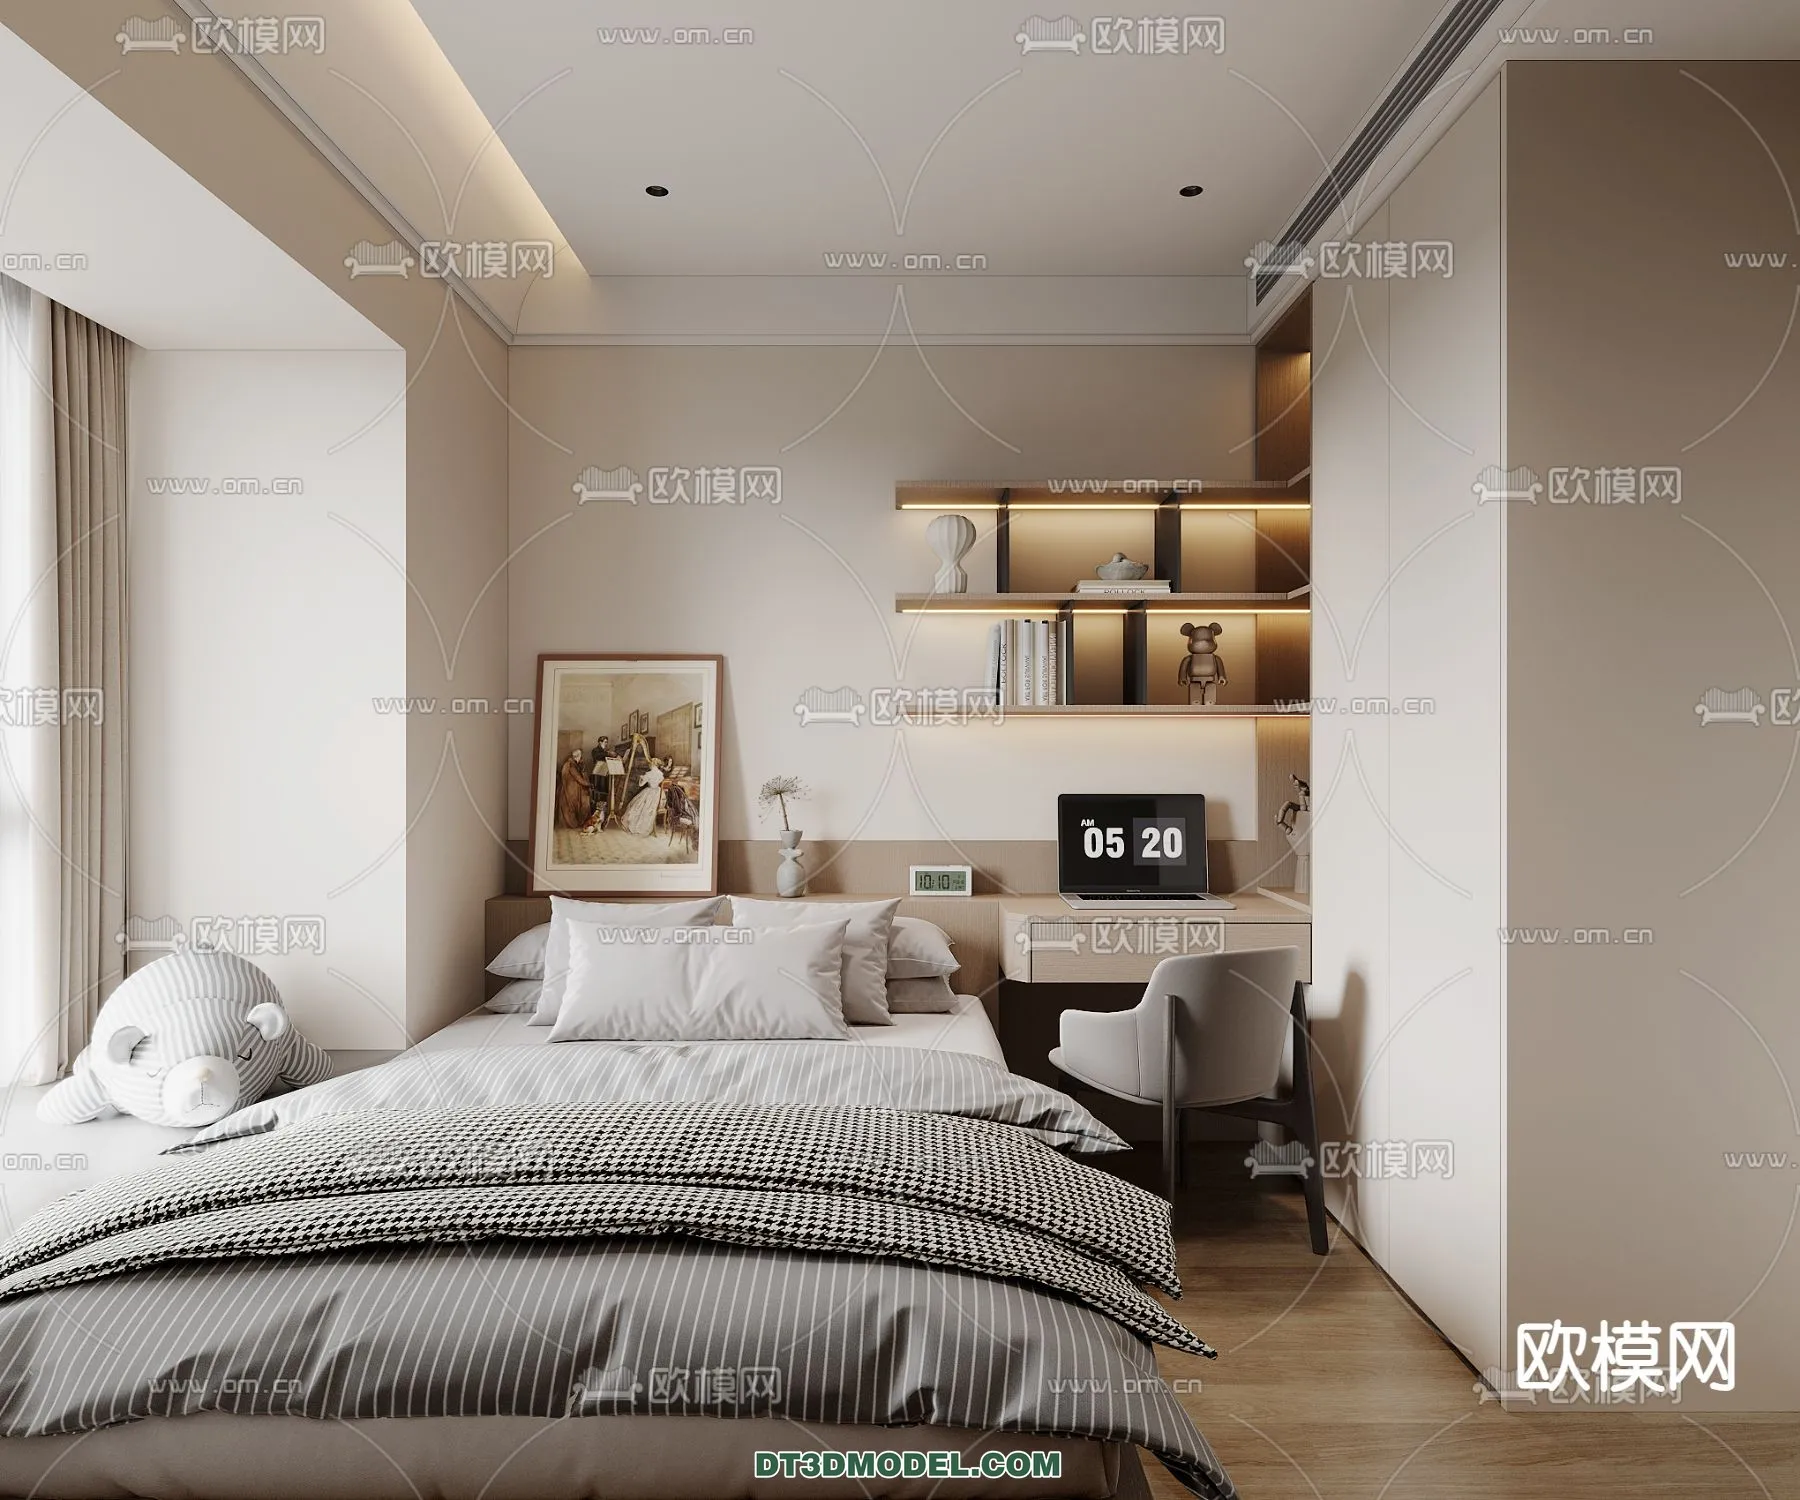 Tatami Bedroom – Japan Bedroom – 3D Scene – 073